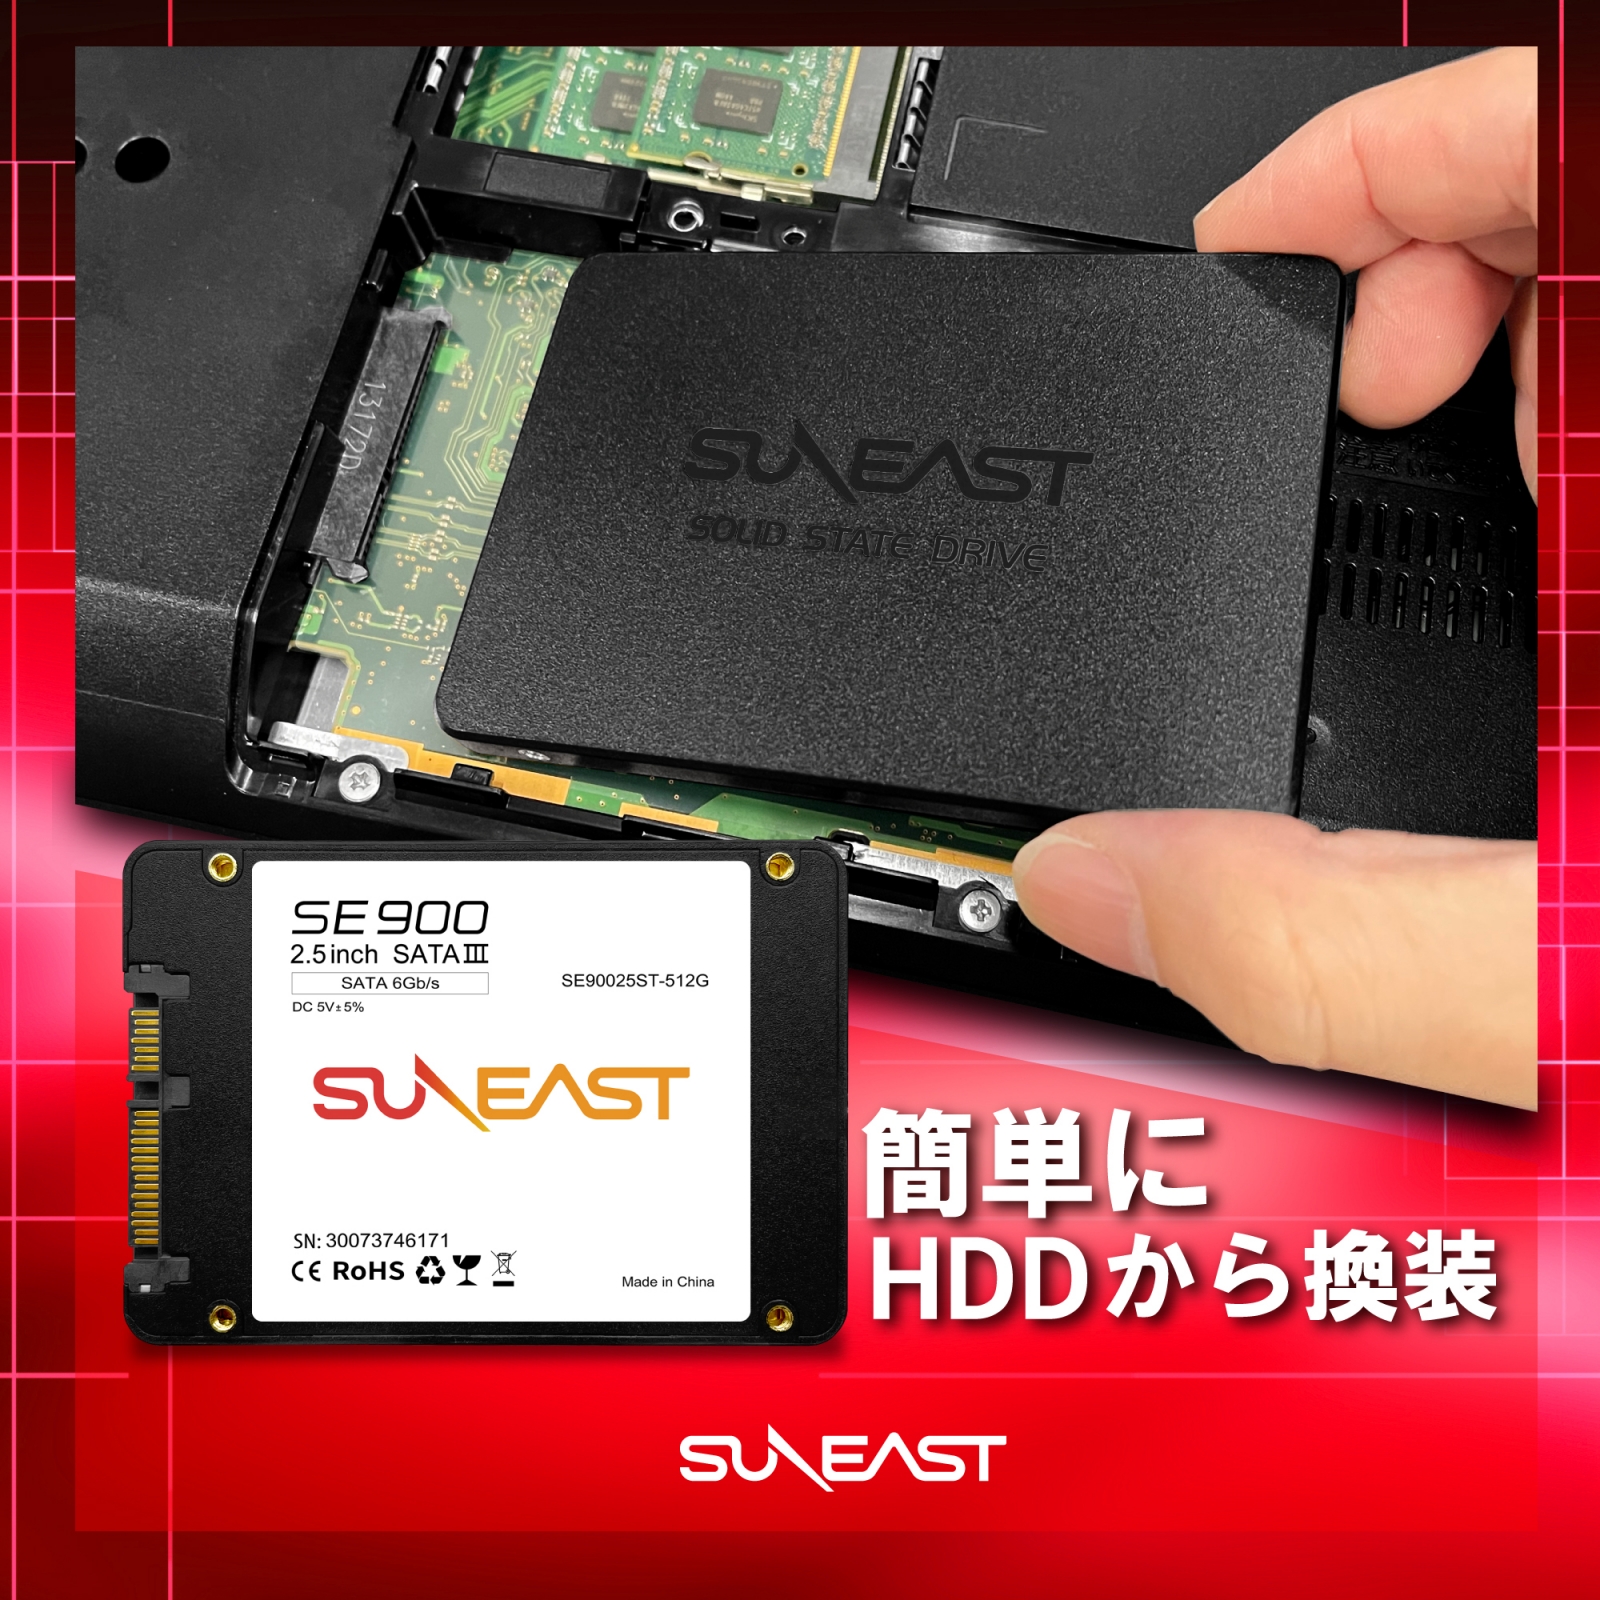 SUNEAST (サンイースト) 1TB 内蔵SSD 2.5インチ SATA3 6Gb/s 3D NAND PS4 SE90025ST-01TB  :11469:SSD ストレージ専門店SUNEASTストア - 通販 - Yahoo!ショッピング